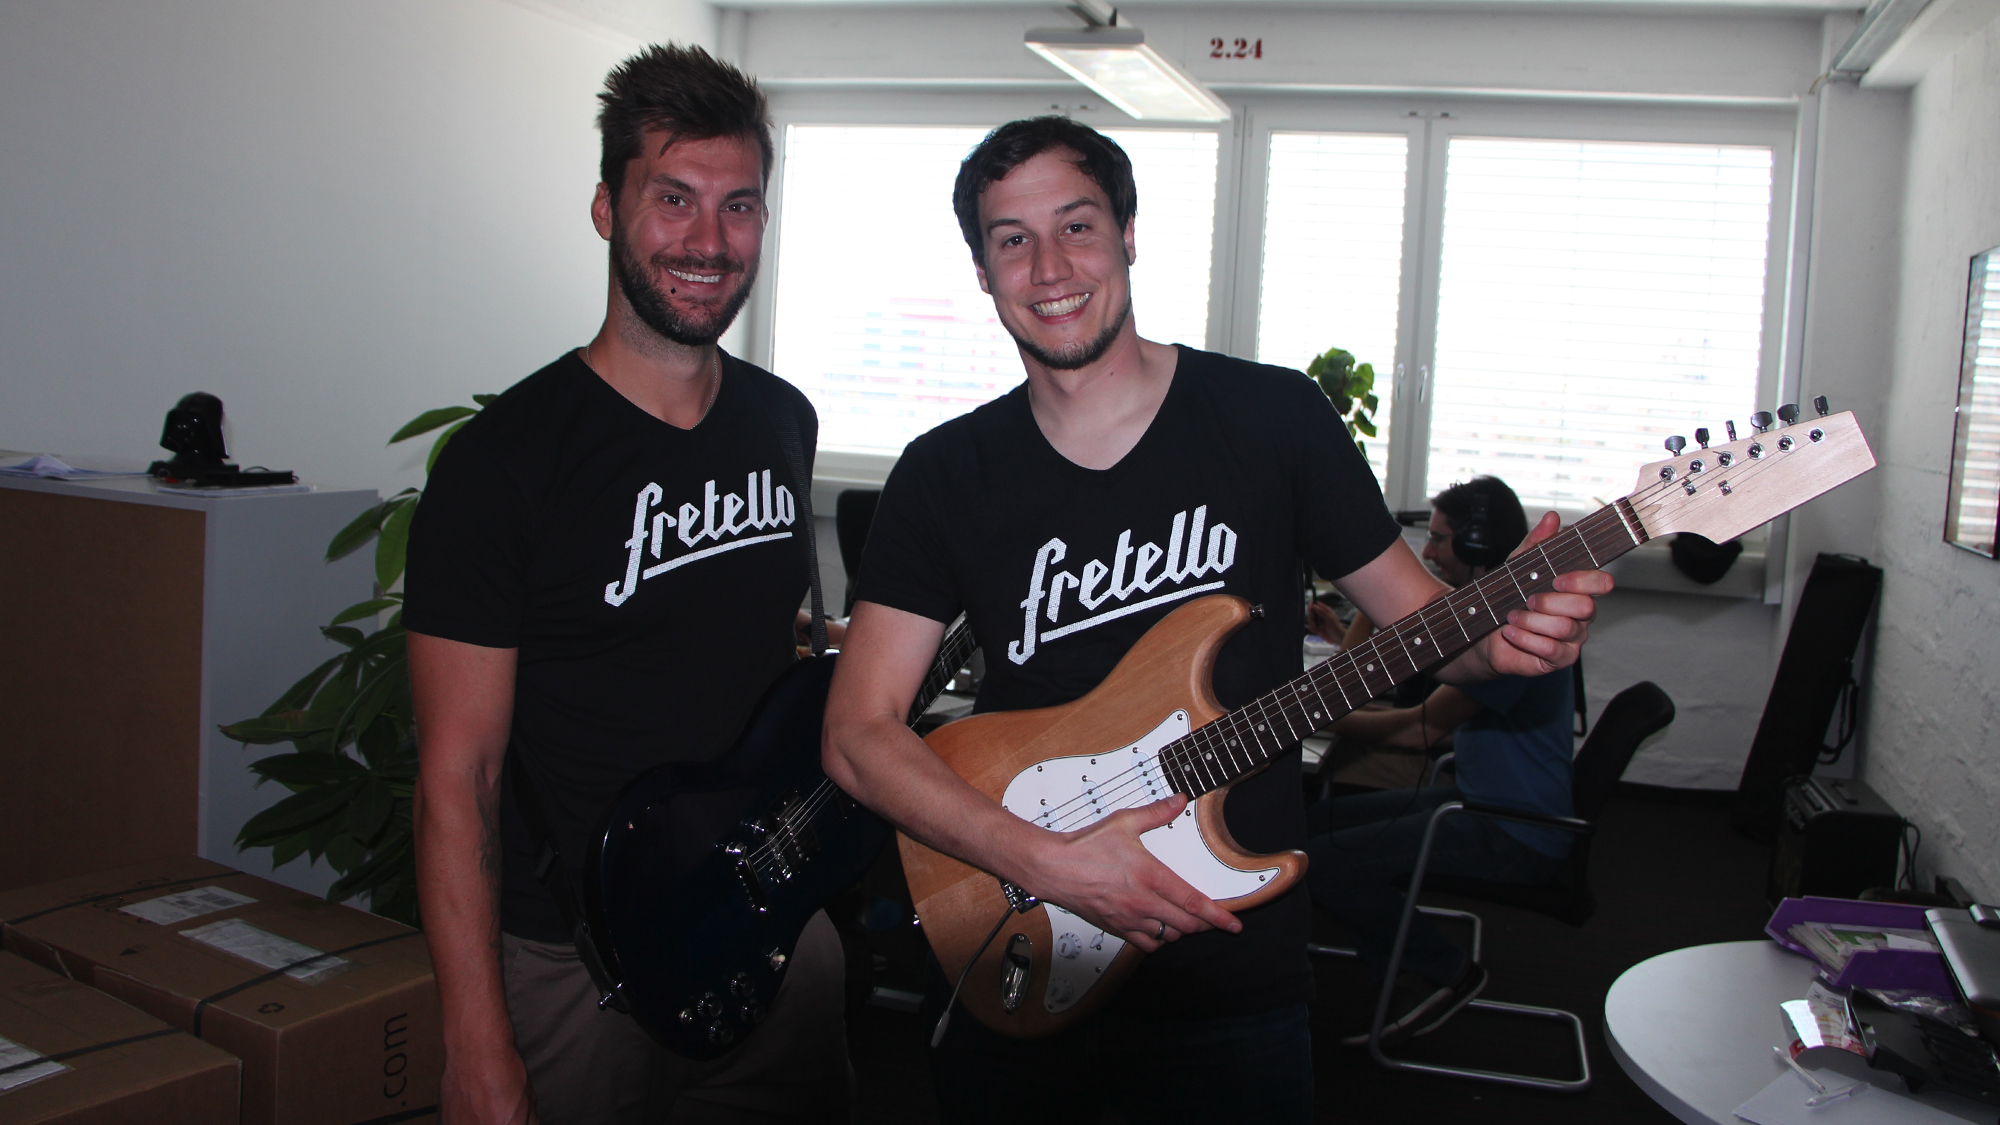 Florian Lettner (CEO) and Wolfgang Damm (CTO) vom Linzer Startup Fretello. @ Jakob Steinschaden